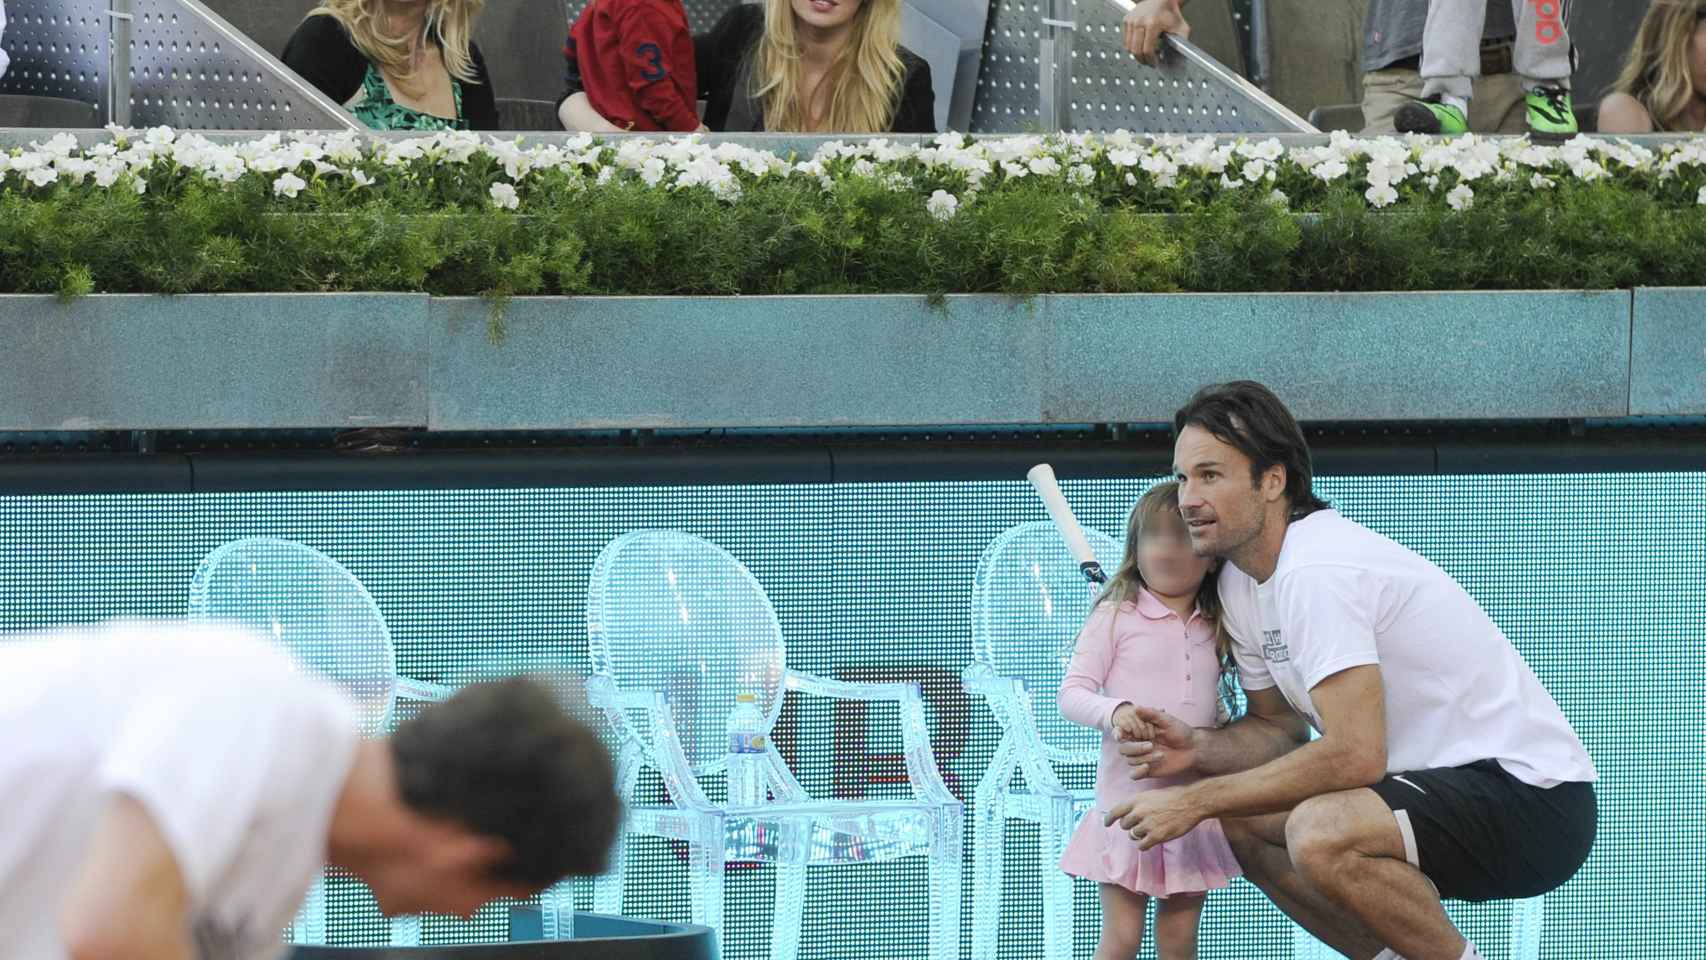 Carlos Moyá en pleno torneo de tenis bajo la atenta mirada de su mujer Carolina y sus hijos.